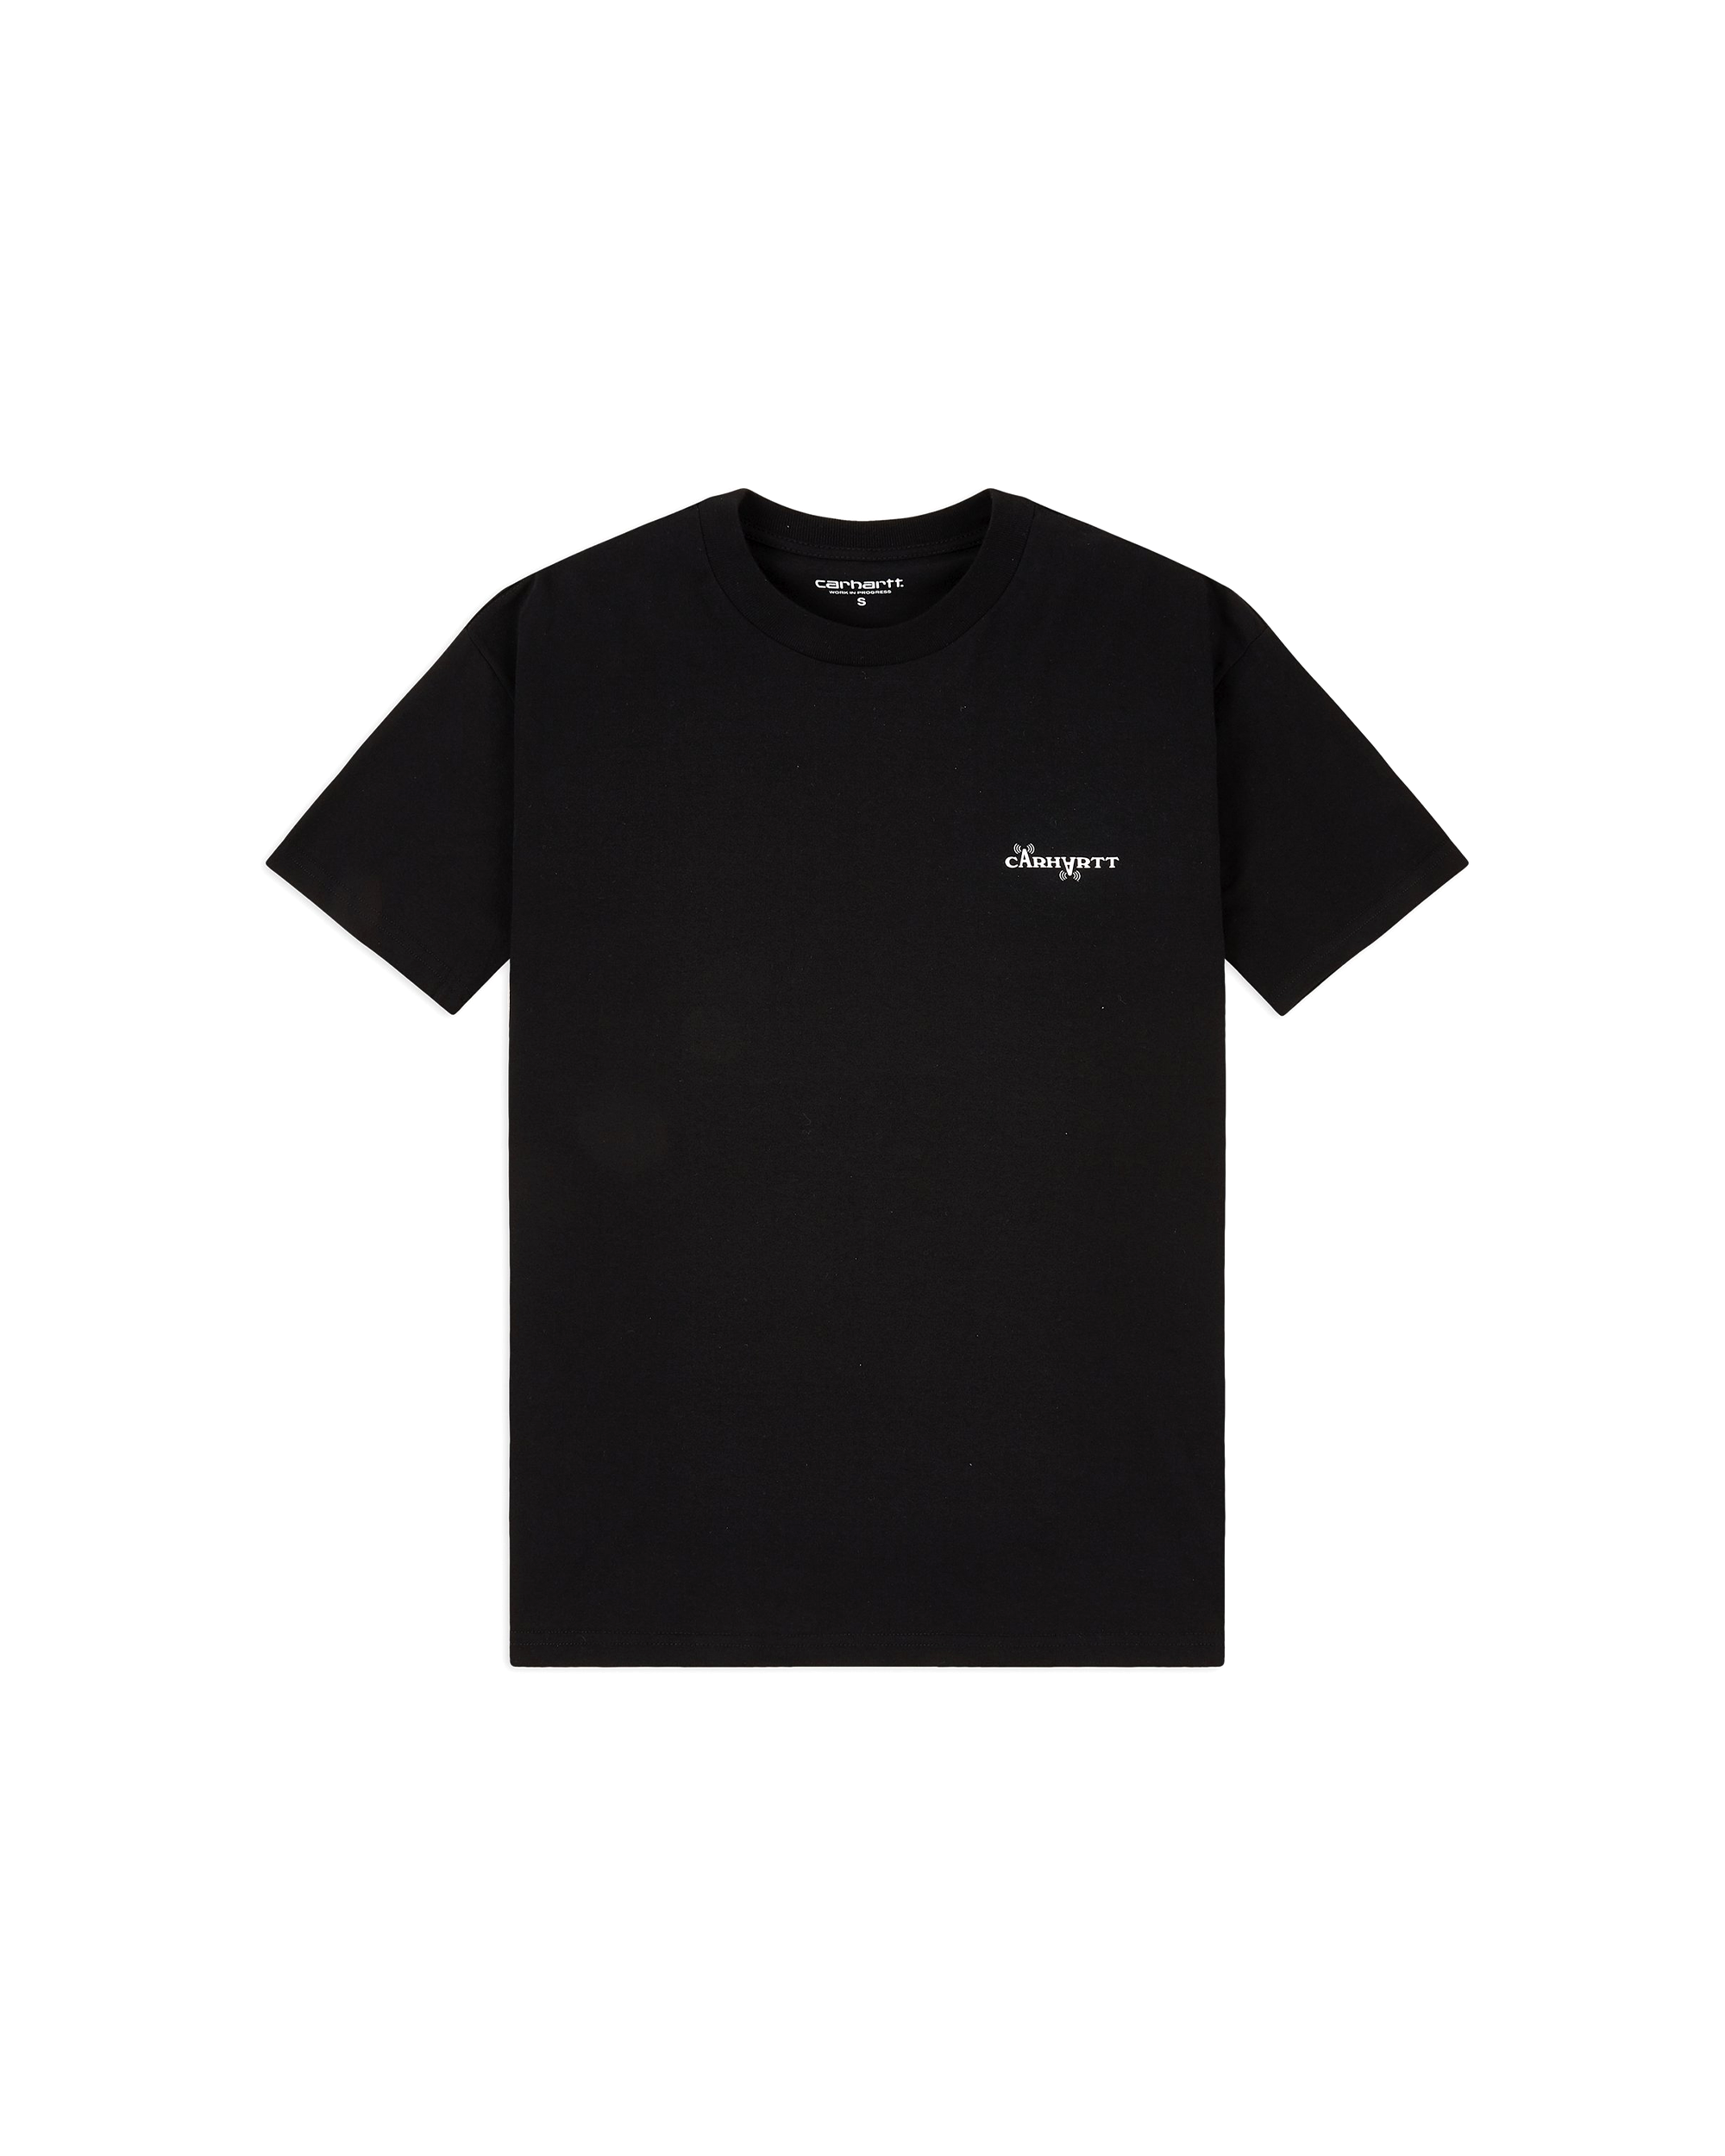 Calibrate T-shirt - Black